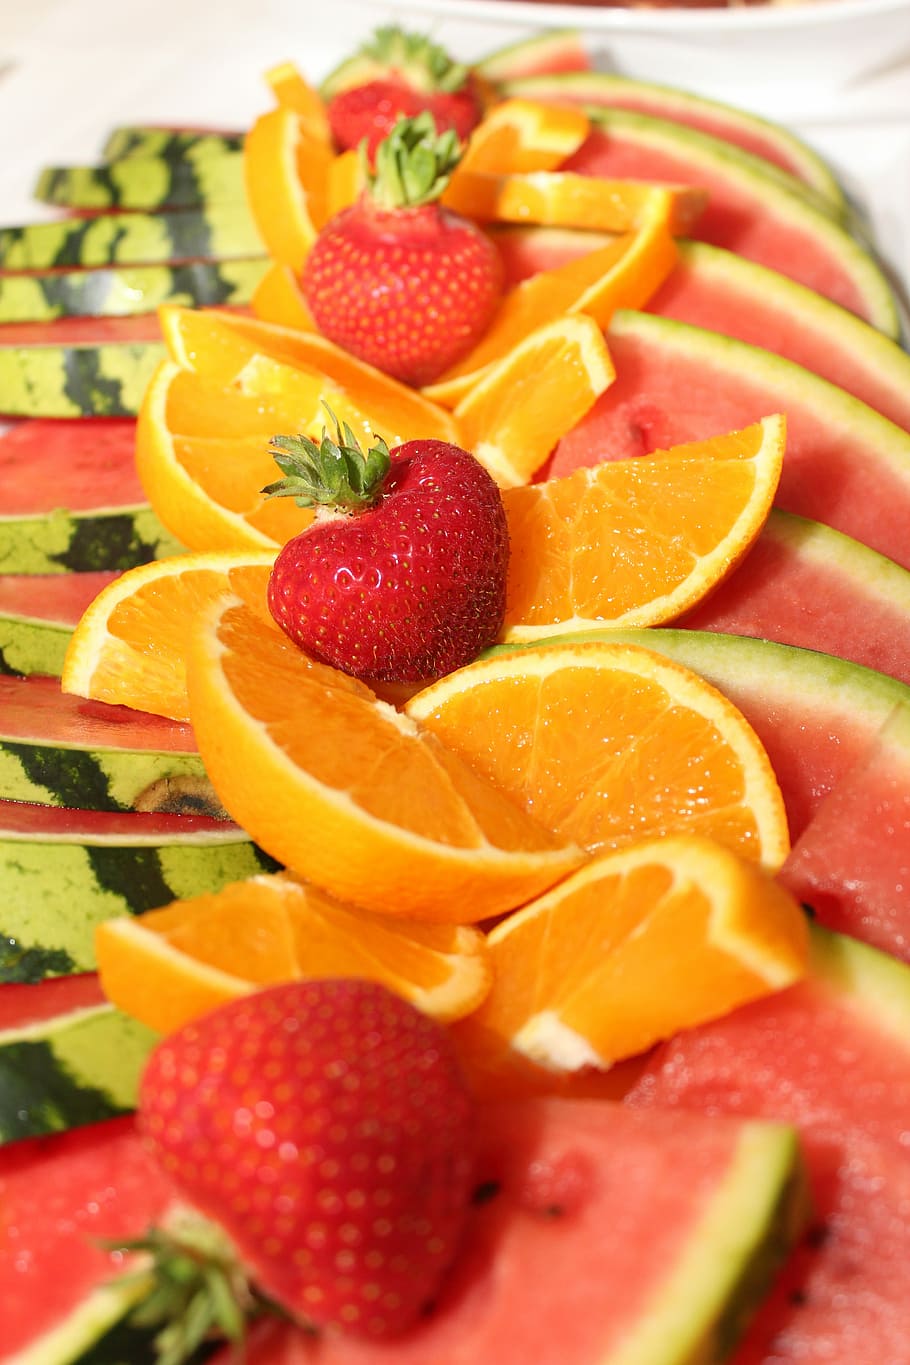 Citrus, Fruits, Watermelon, Orange, citrus fruits, strawberries, citrus fruit, fruit, healthy, frisch